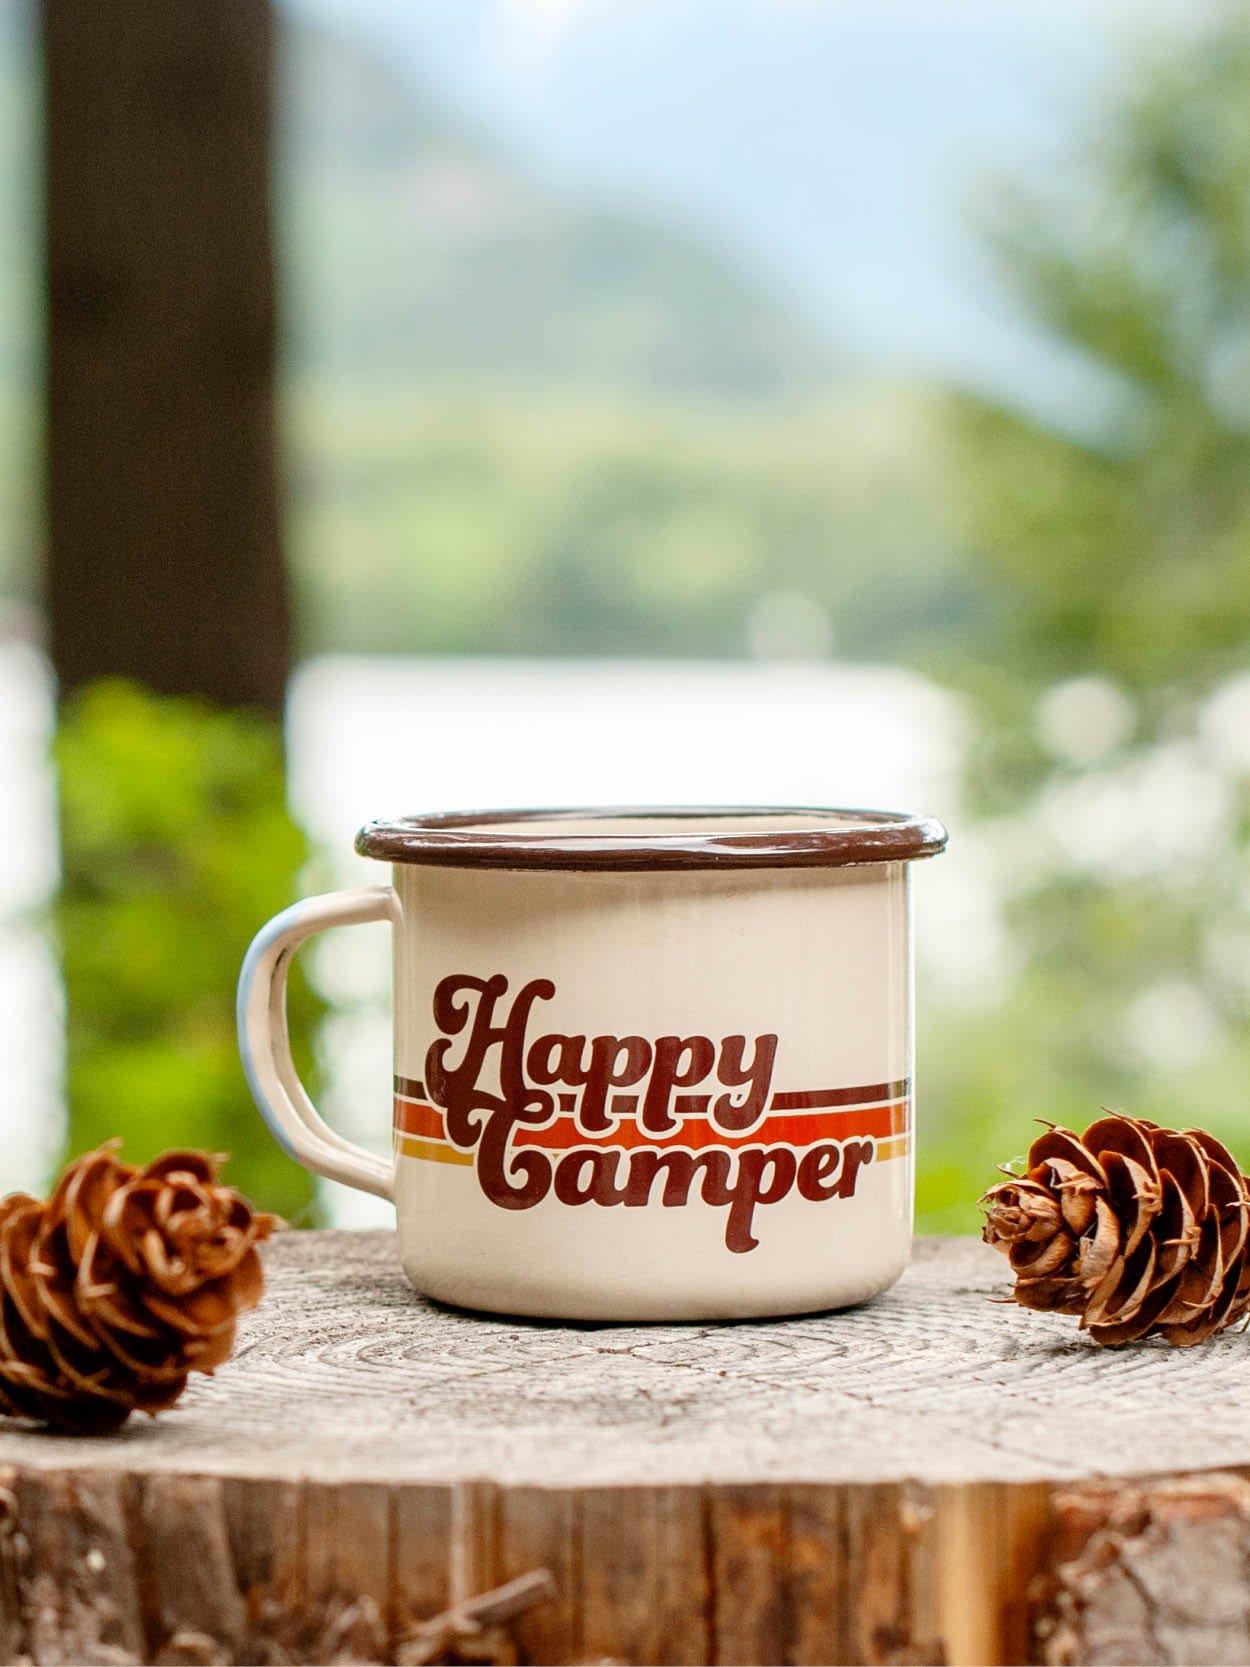 Happy-Camper-Mug-Branding-by-Amanda-Weedmark.jpg